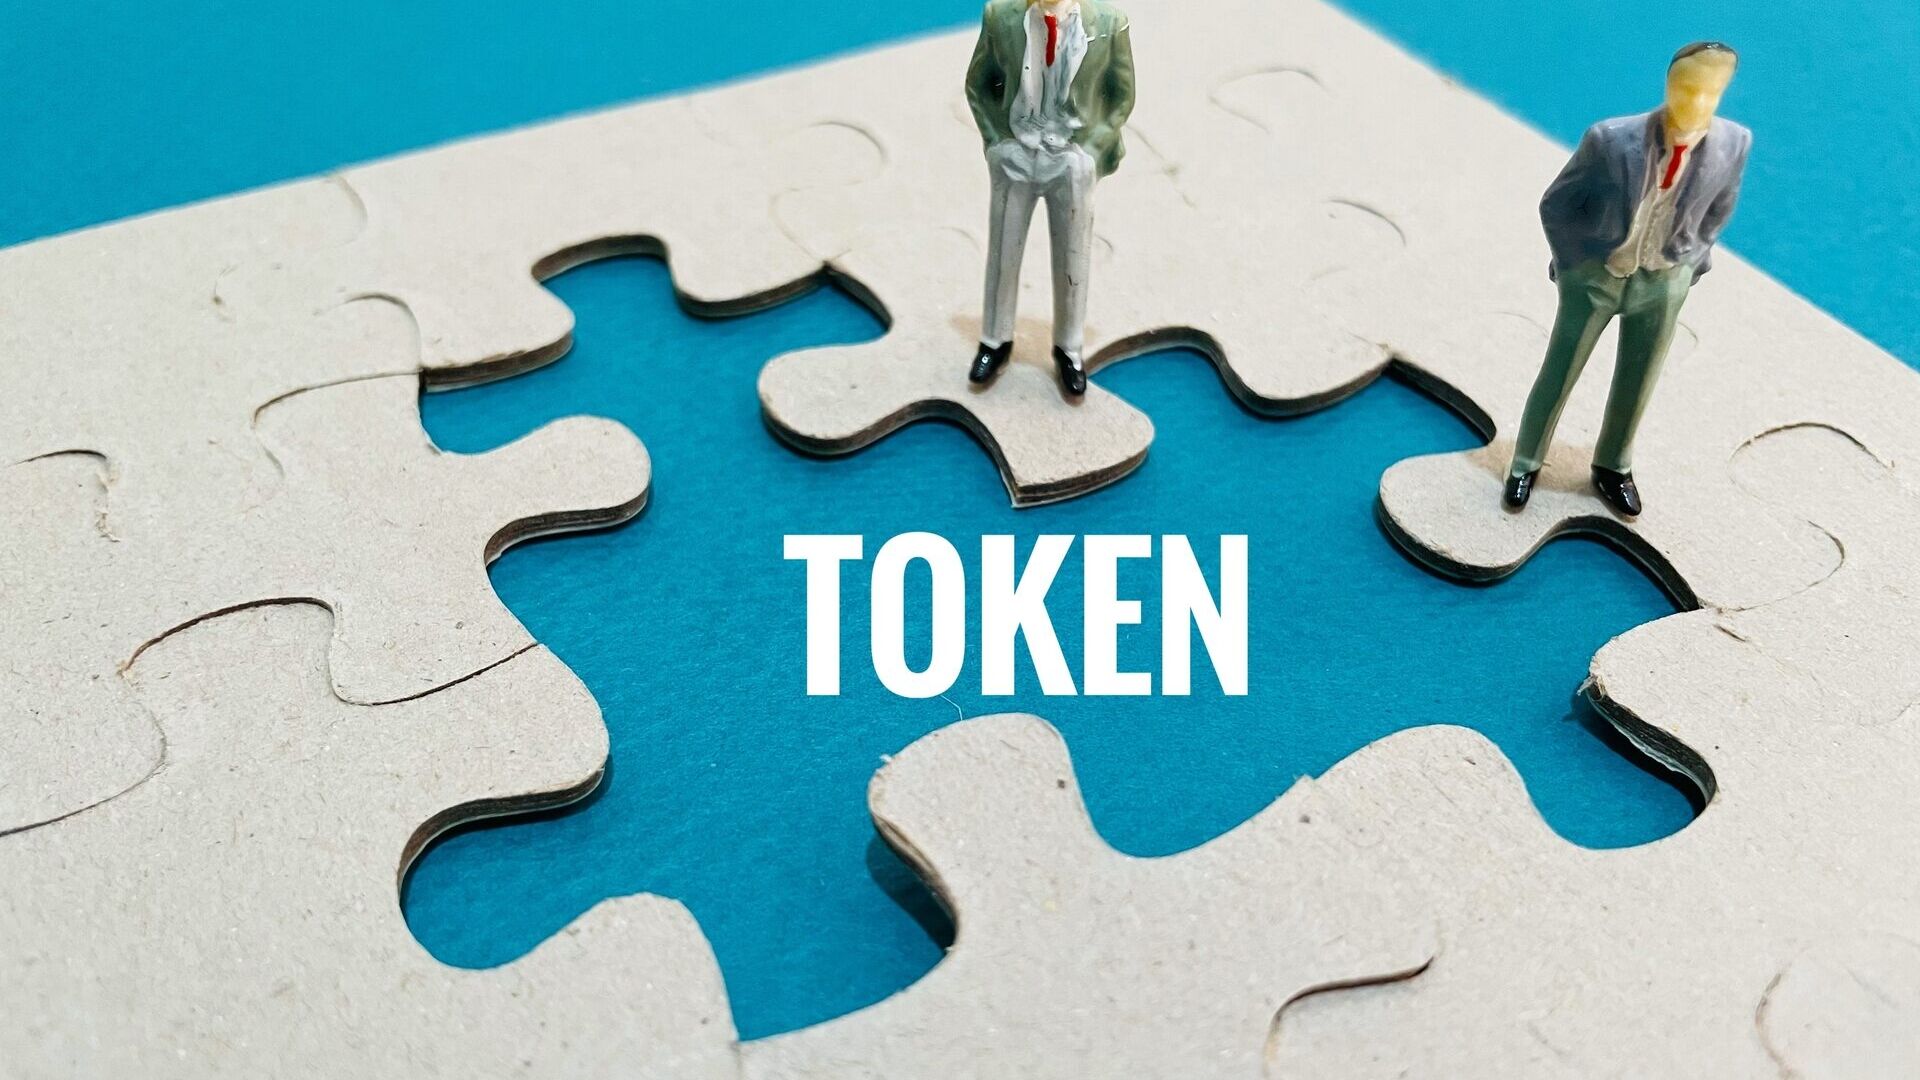 Tokenizzazione: la tokenizzazione degli asset rappresenta un modo alternativo e innovativo per ottenere la proprietà frazionata di un bene